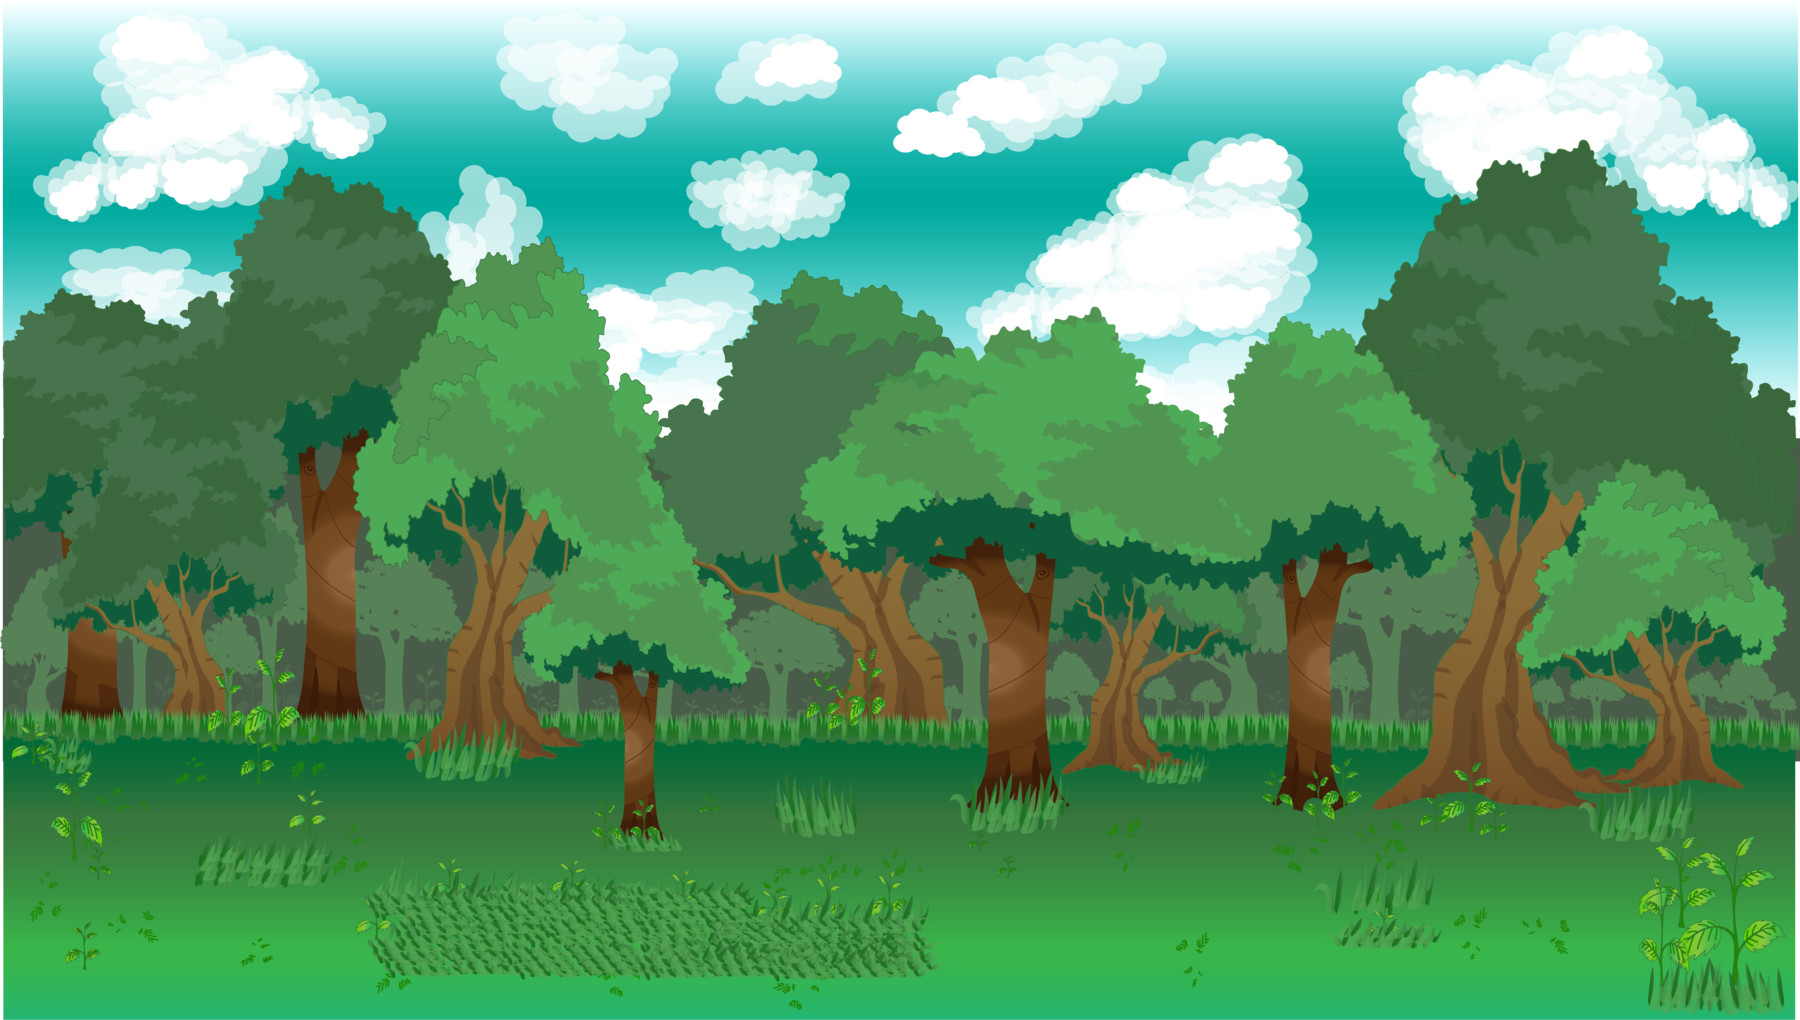 Hình nền rừng cho game 2D là một thế giới rộng lớn đầy ẩn số và bí ẩn. Từ những con đường quanh co đầy kỳ vĩ, những khe núi hùng vĩ, tới những nơi trú ẩn của những sinh vật hoang dã. Hình nền rừng cho game 2D sẽ đưa bạn đến những mê cung đầy kịch tính và bất ngờ.